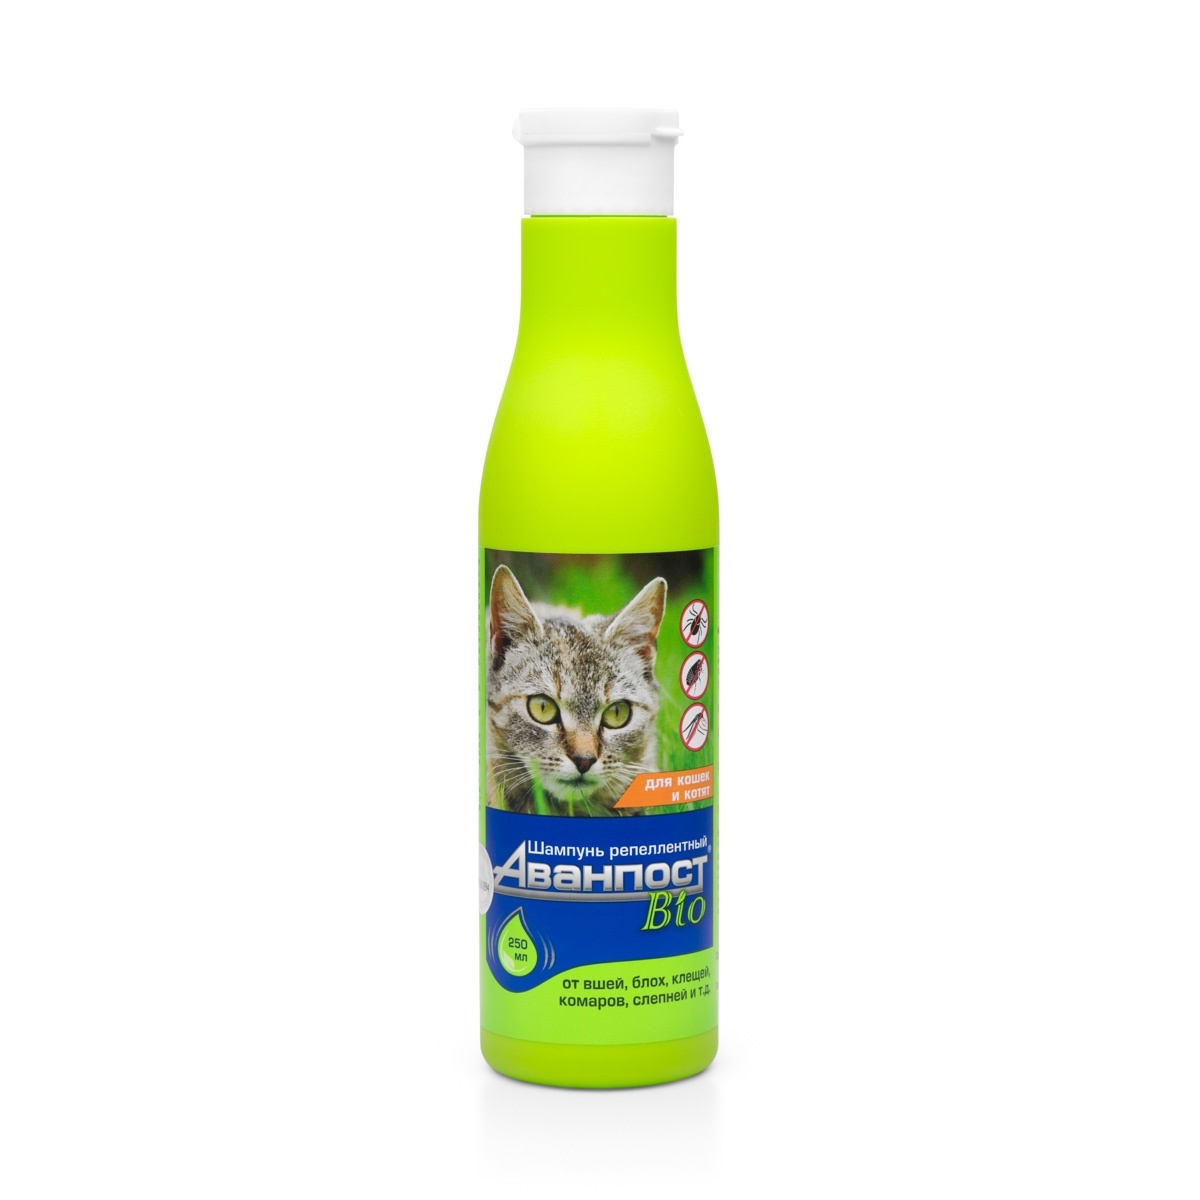 Веда Веда Аванпост BIO шампунь репеллентный для кошек (250 г) веда веда шампунь витаминный для кроликов 220 мл